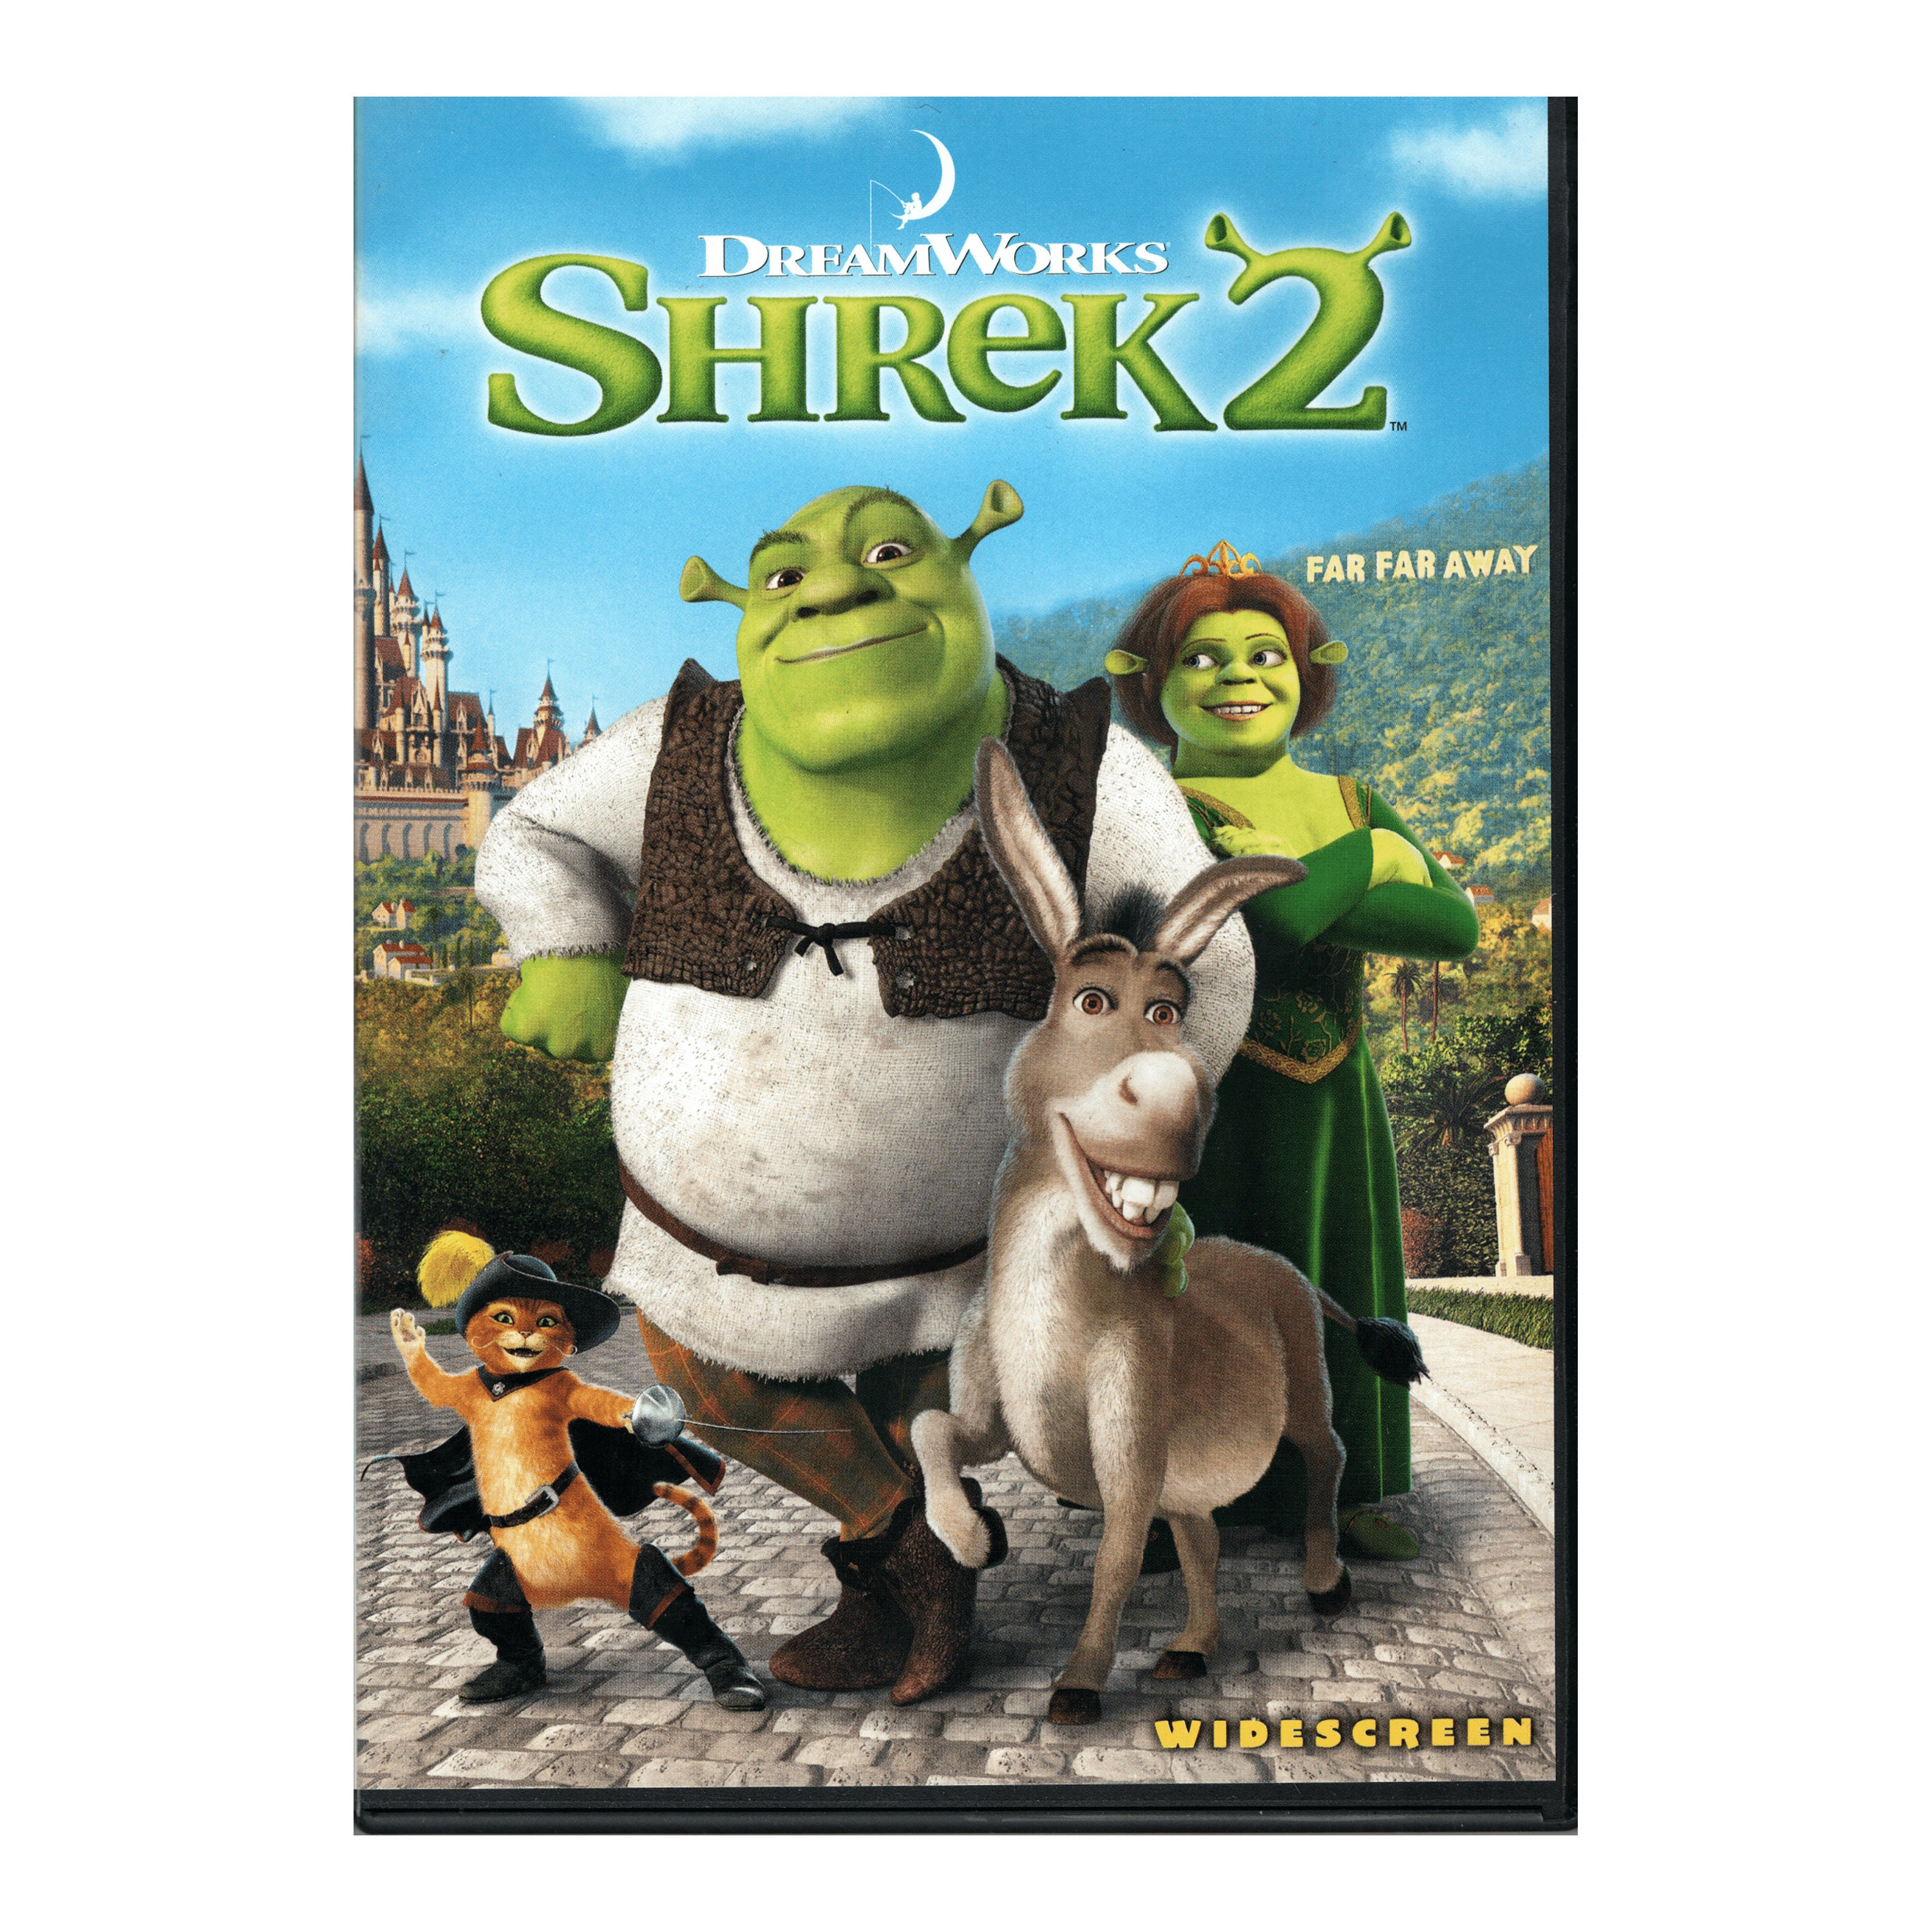 KJS: Latest 'Shrek' closes the book on series